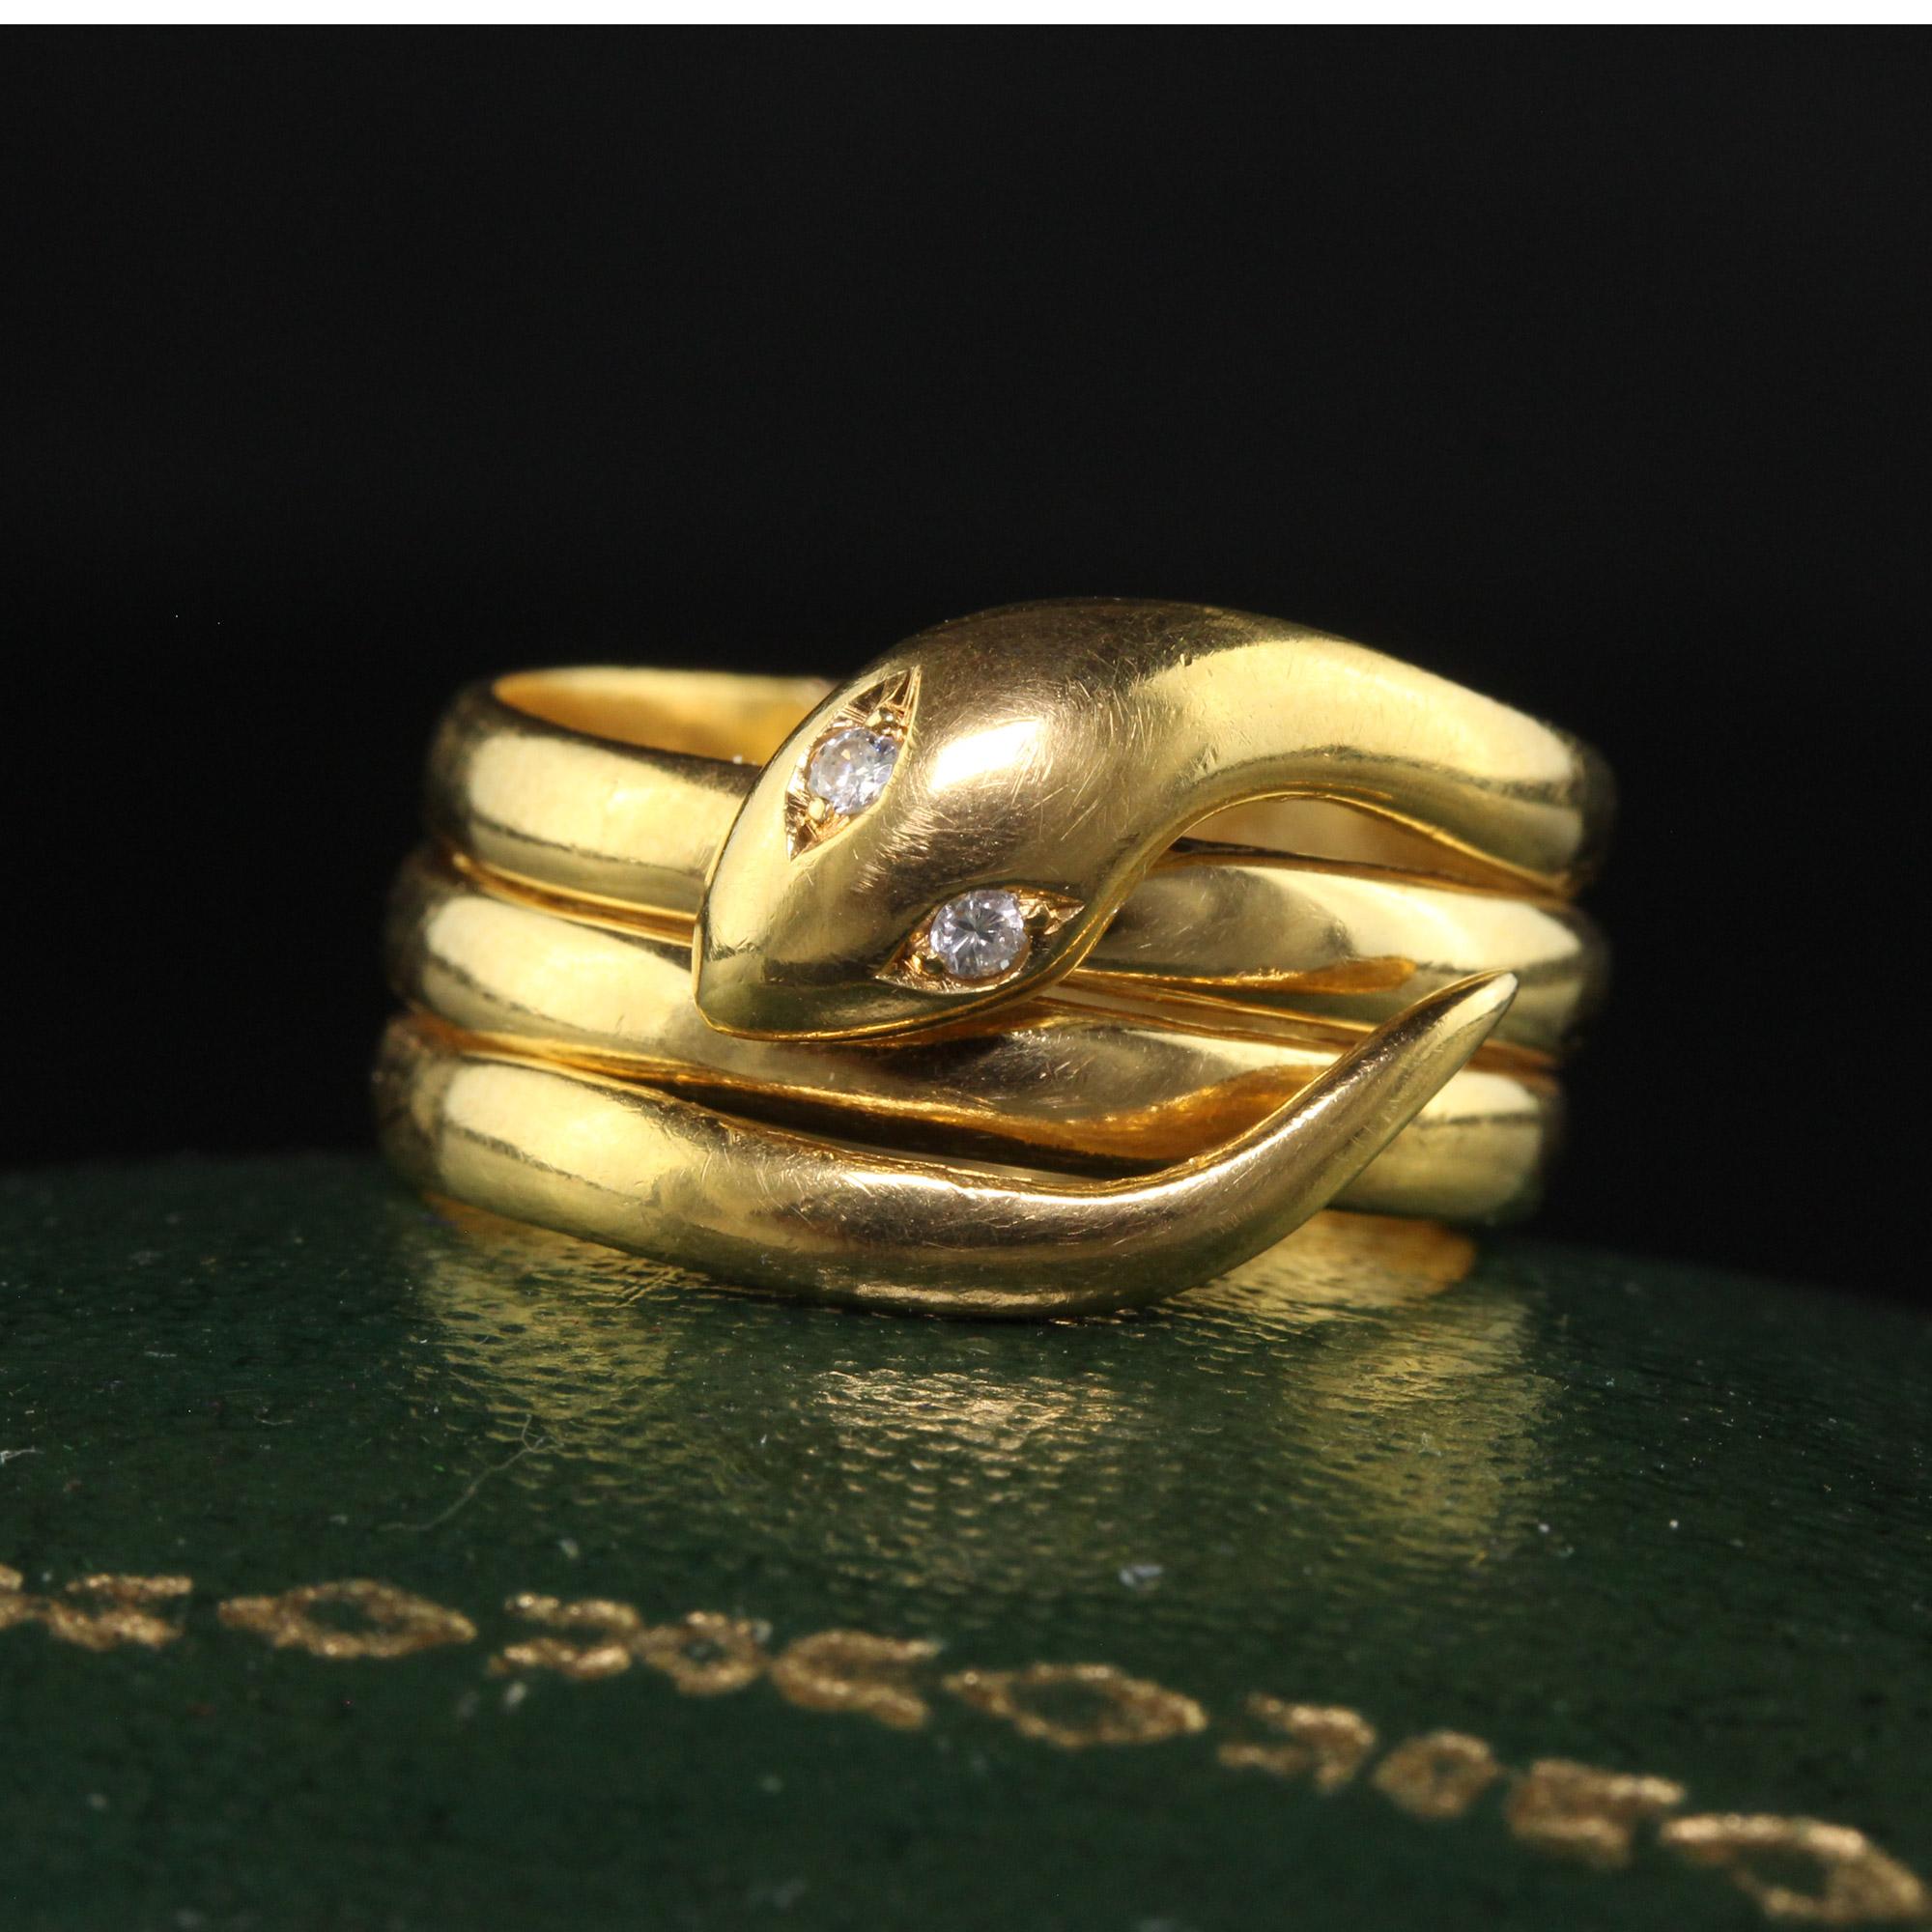 Schöne antike viktorianische 18K Gelbgold Diamond Coiled Snaked Ring. Dieser wunderschöne viktorianische Schlangenring ist aus 18 Karat Gelbgold gefertigt. Die Augen der Schlange sind Diamanten und der Ring ist in gutem Zustand. Der Ring sitzt tief